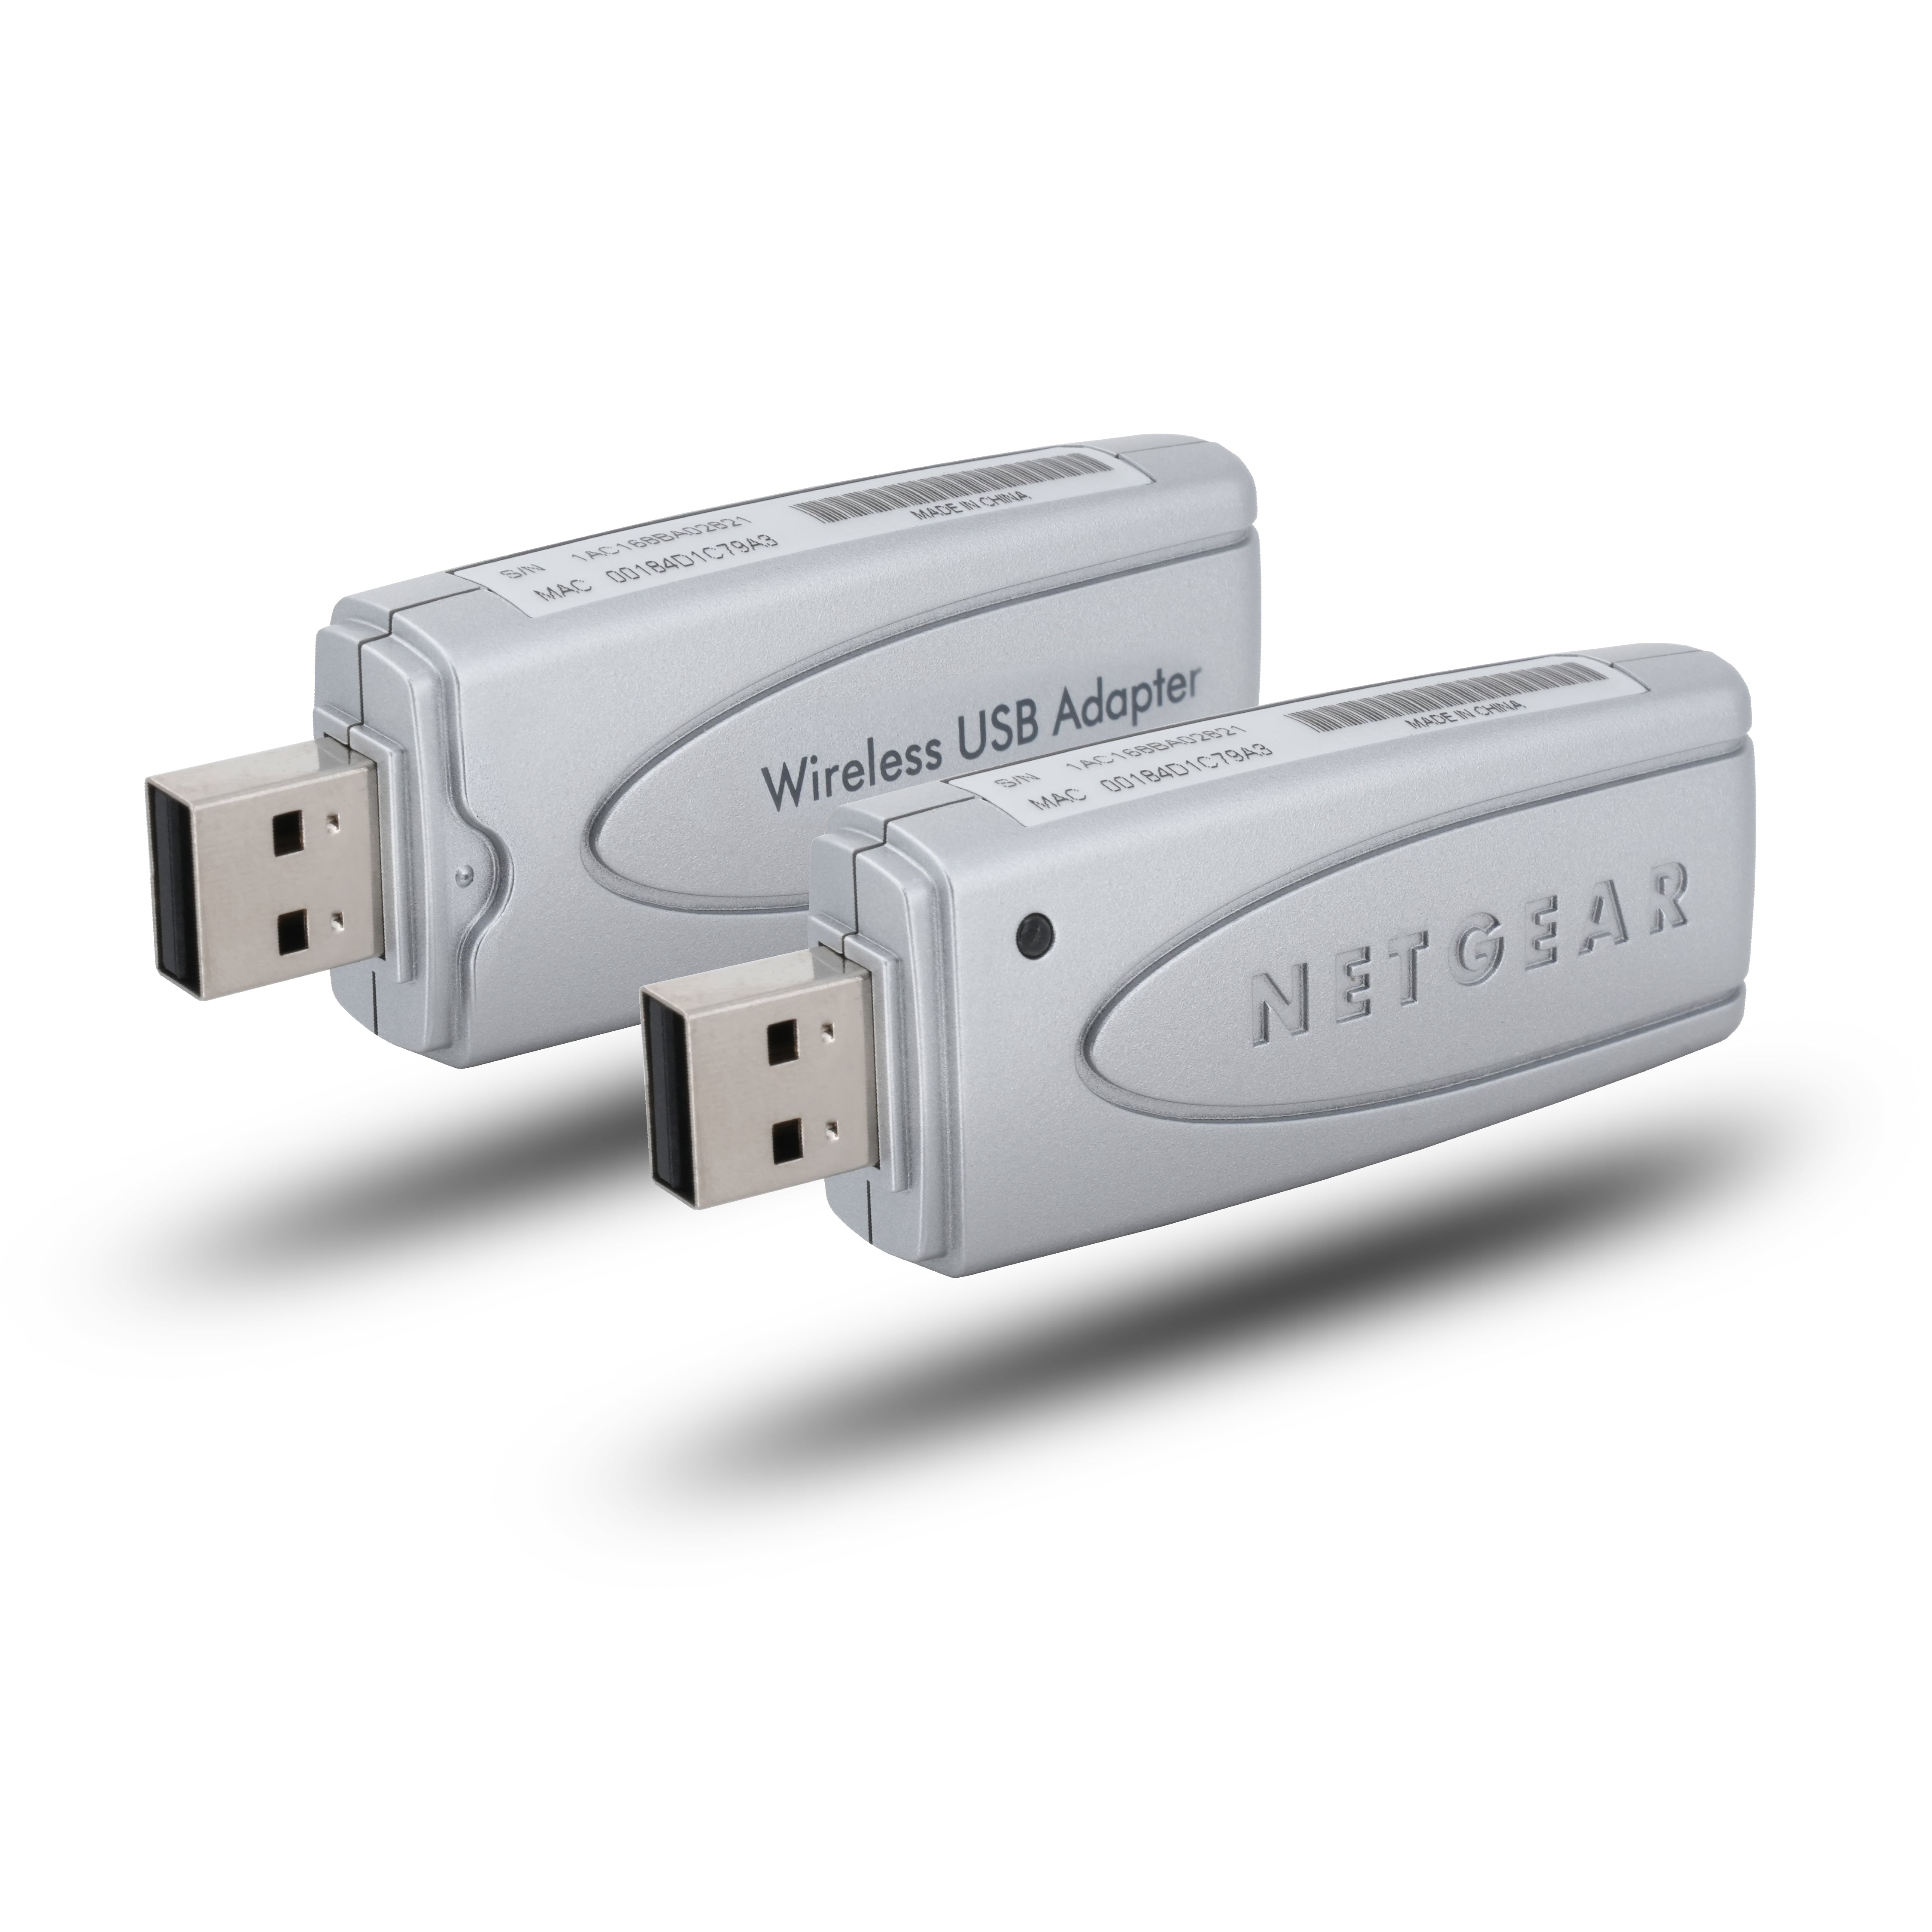 Netgear 54 MBit/s Wireless USB 2.0 Stick 802.11g WLAN Adapter WiFi Dongle